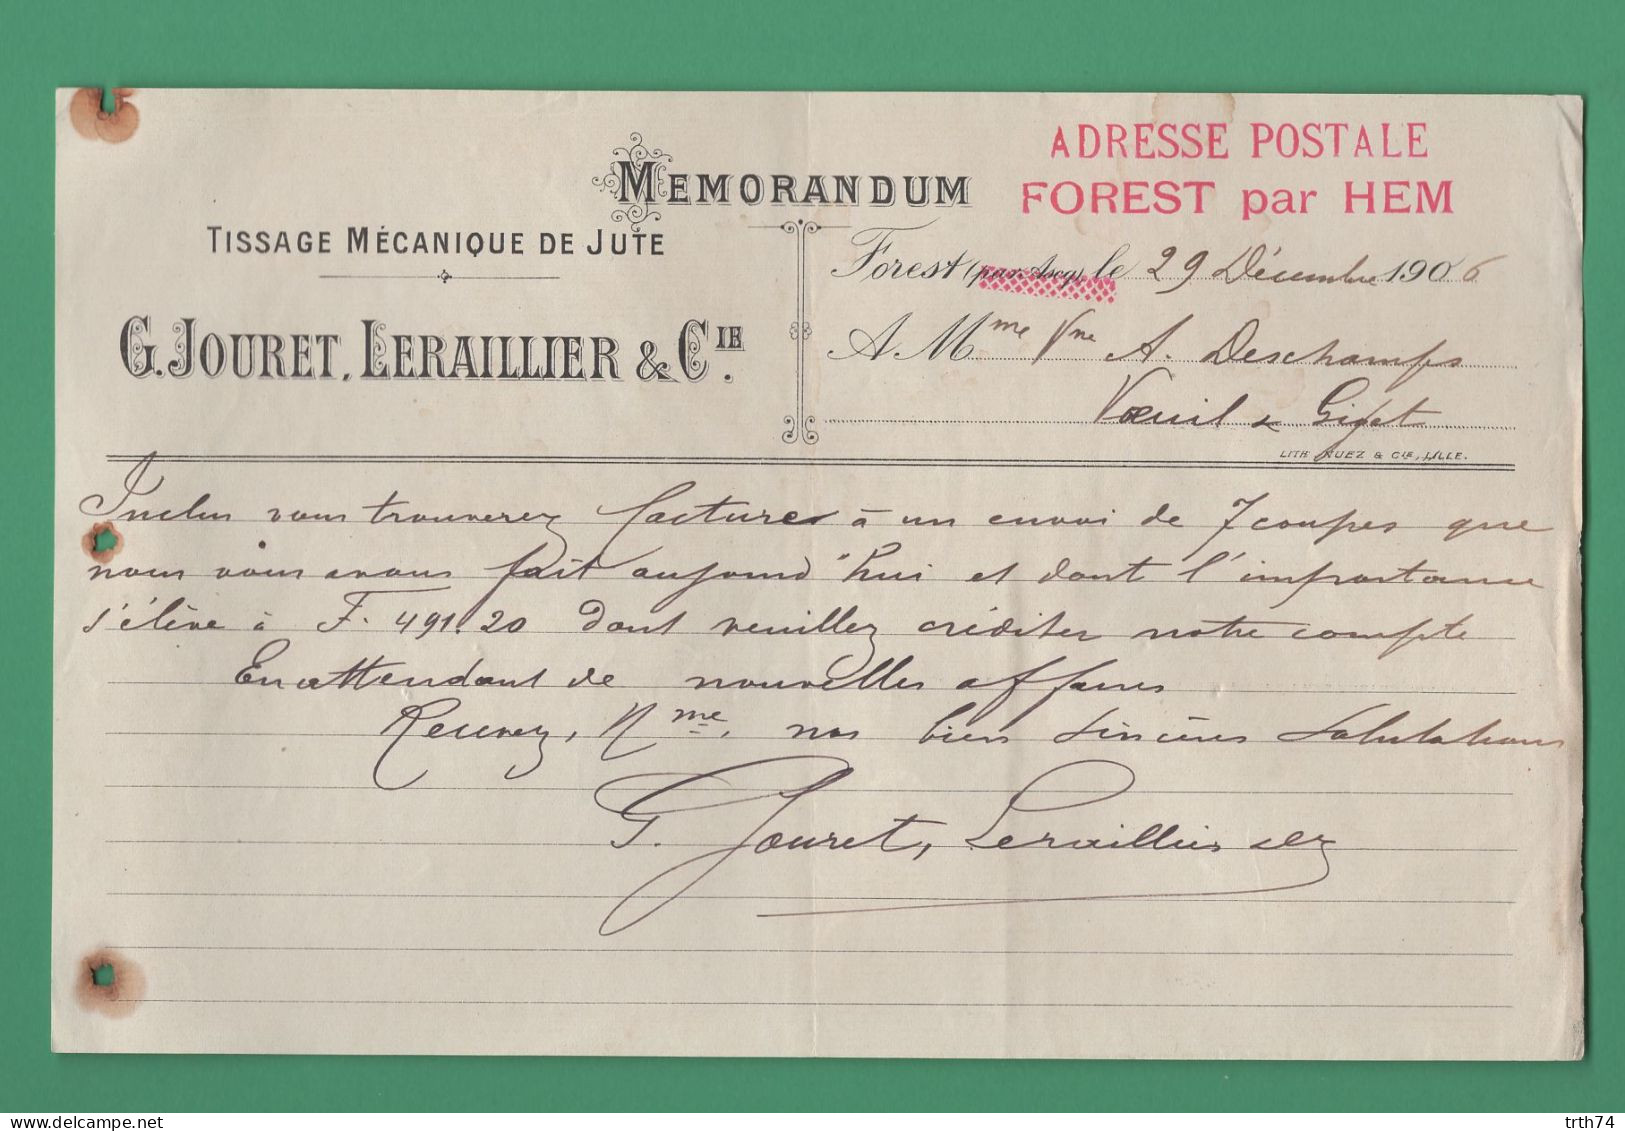 59 Forest Par Hem Ascq Jouret Leraillier Tissage Mécanique De Jute 29 Décembre 1906 - Textile & Clothing